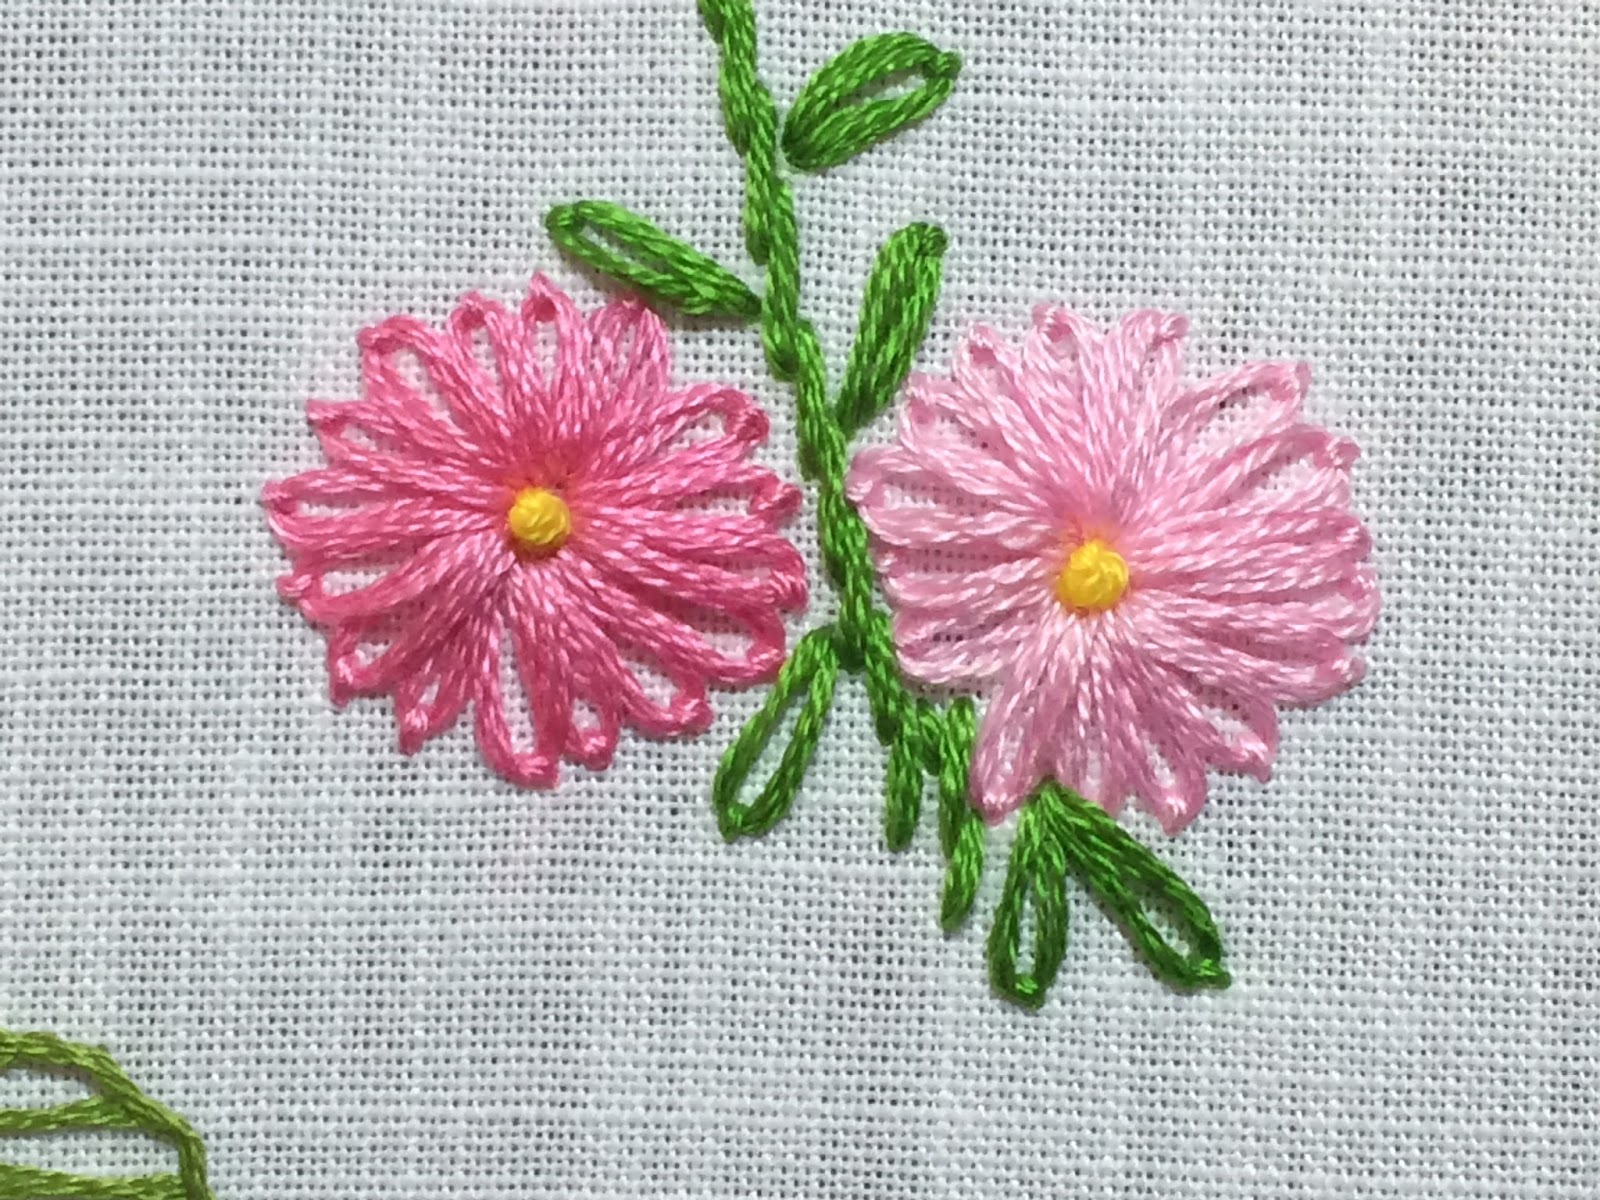 embroidered flower sampler